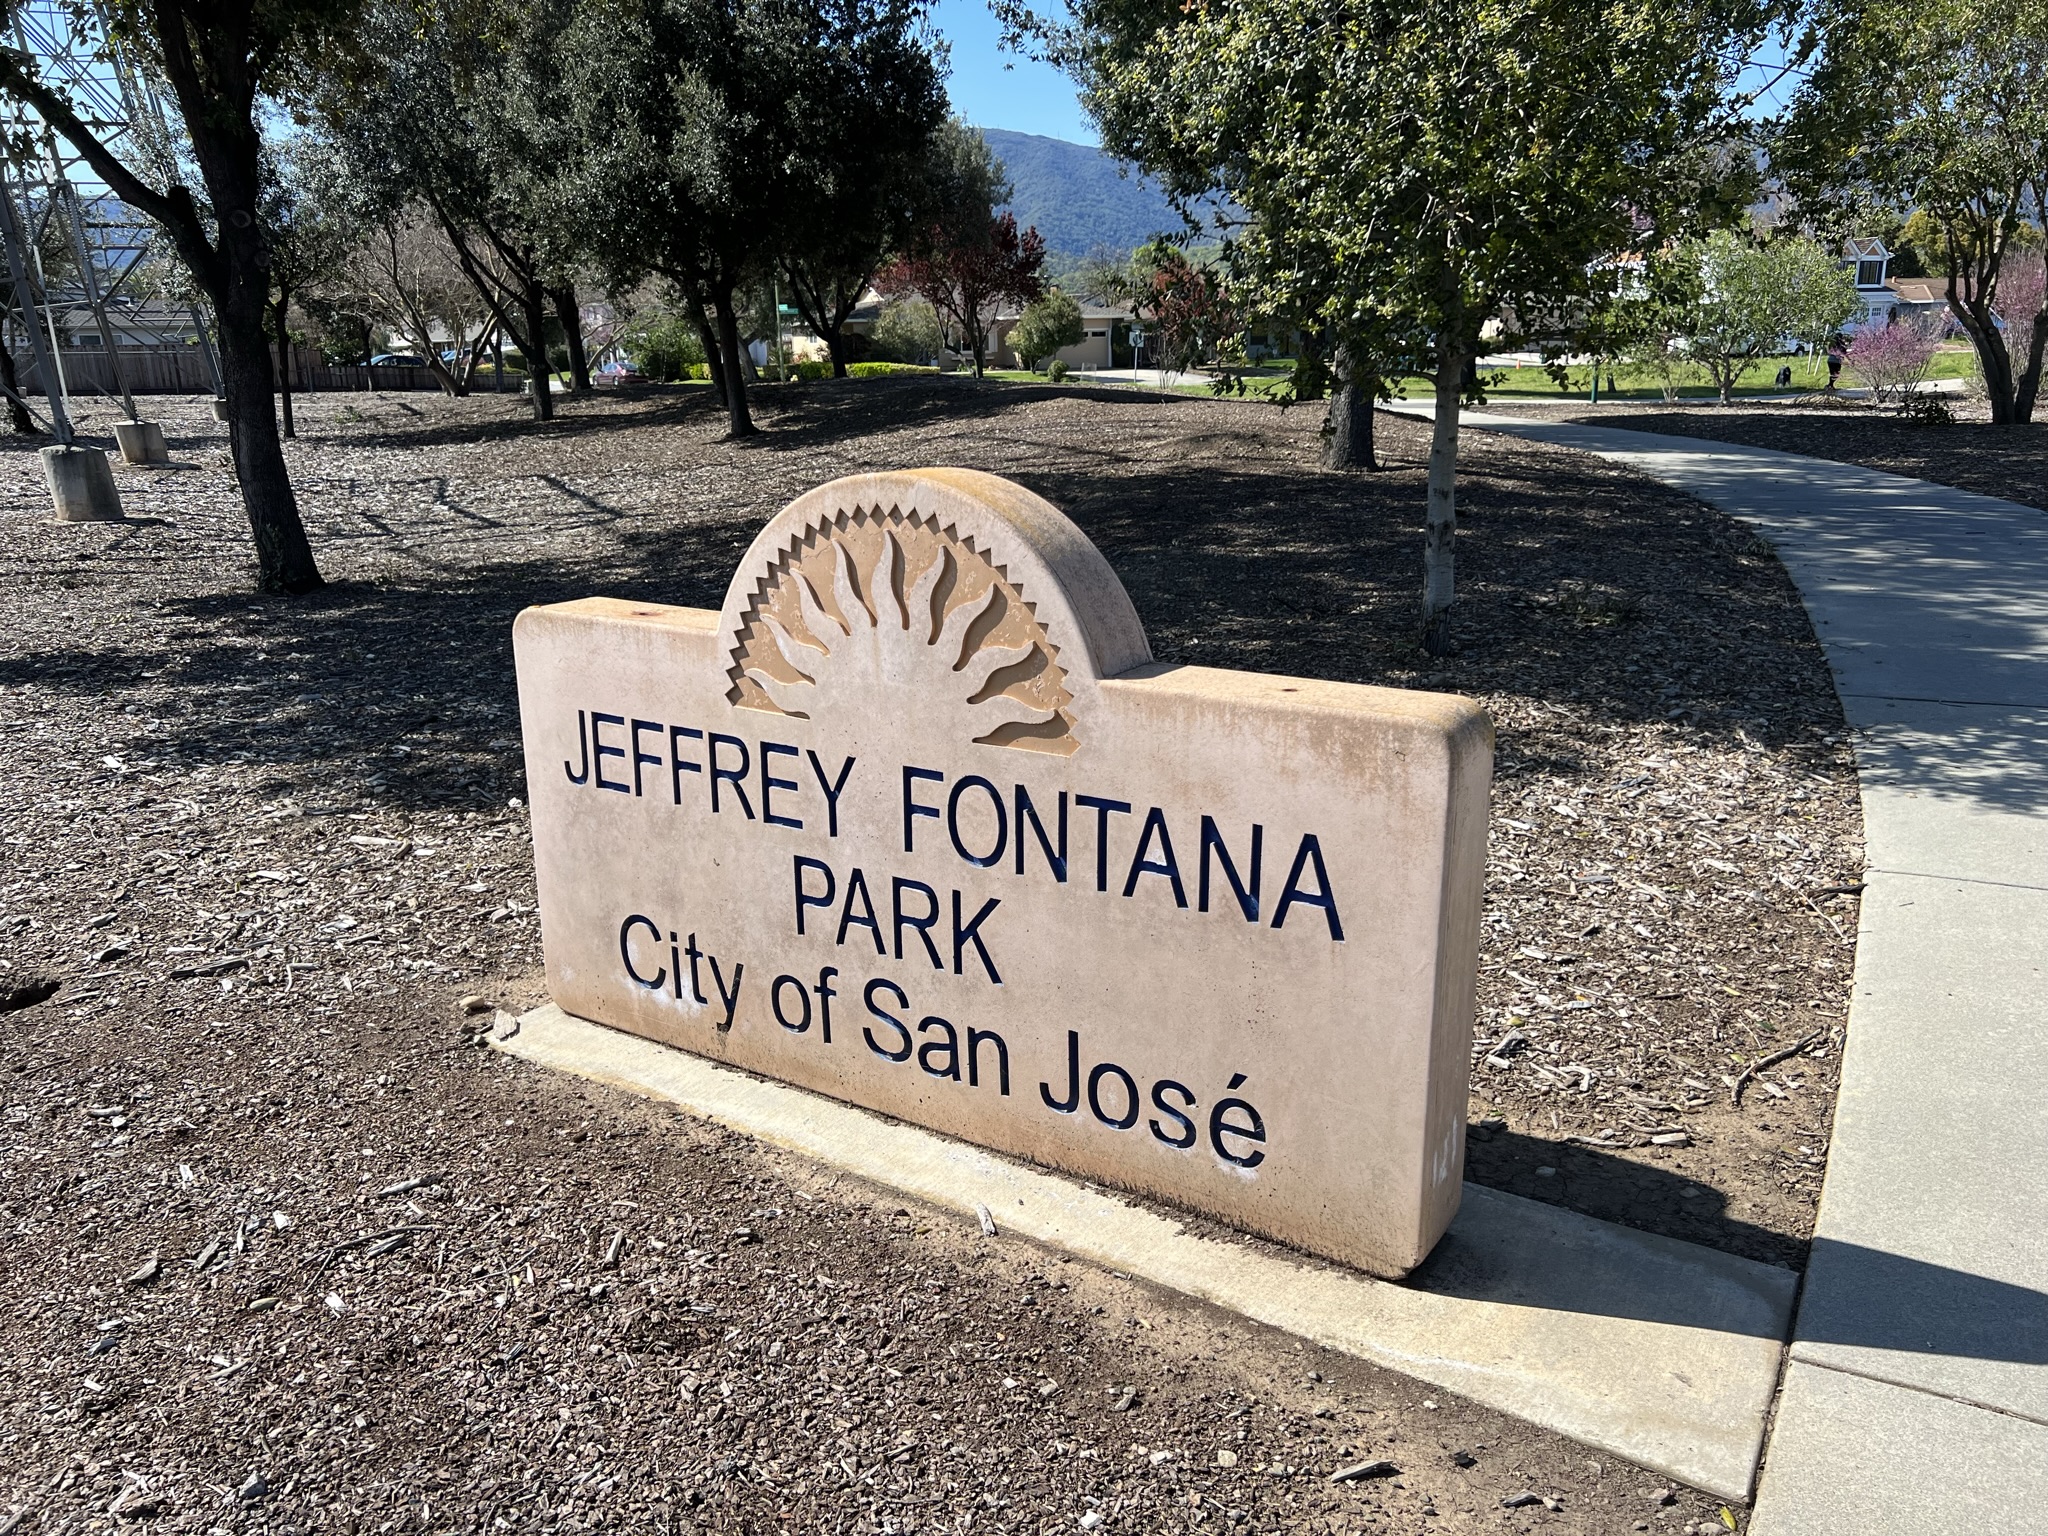 Jeffrey Fontana Park